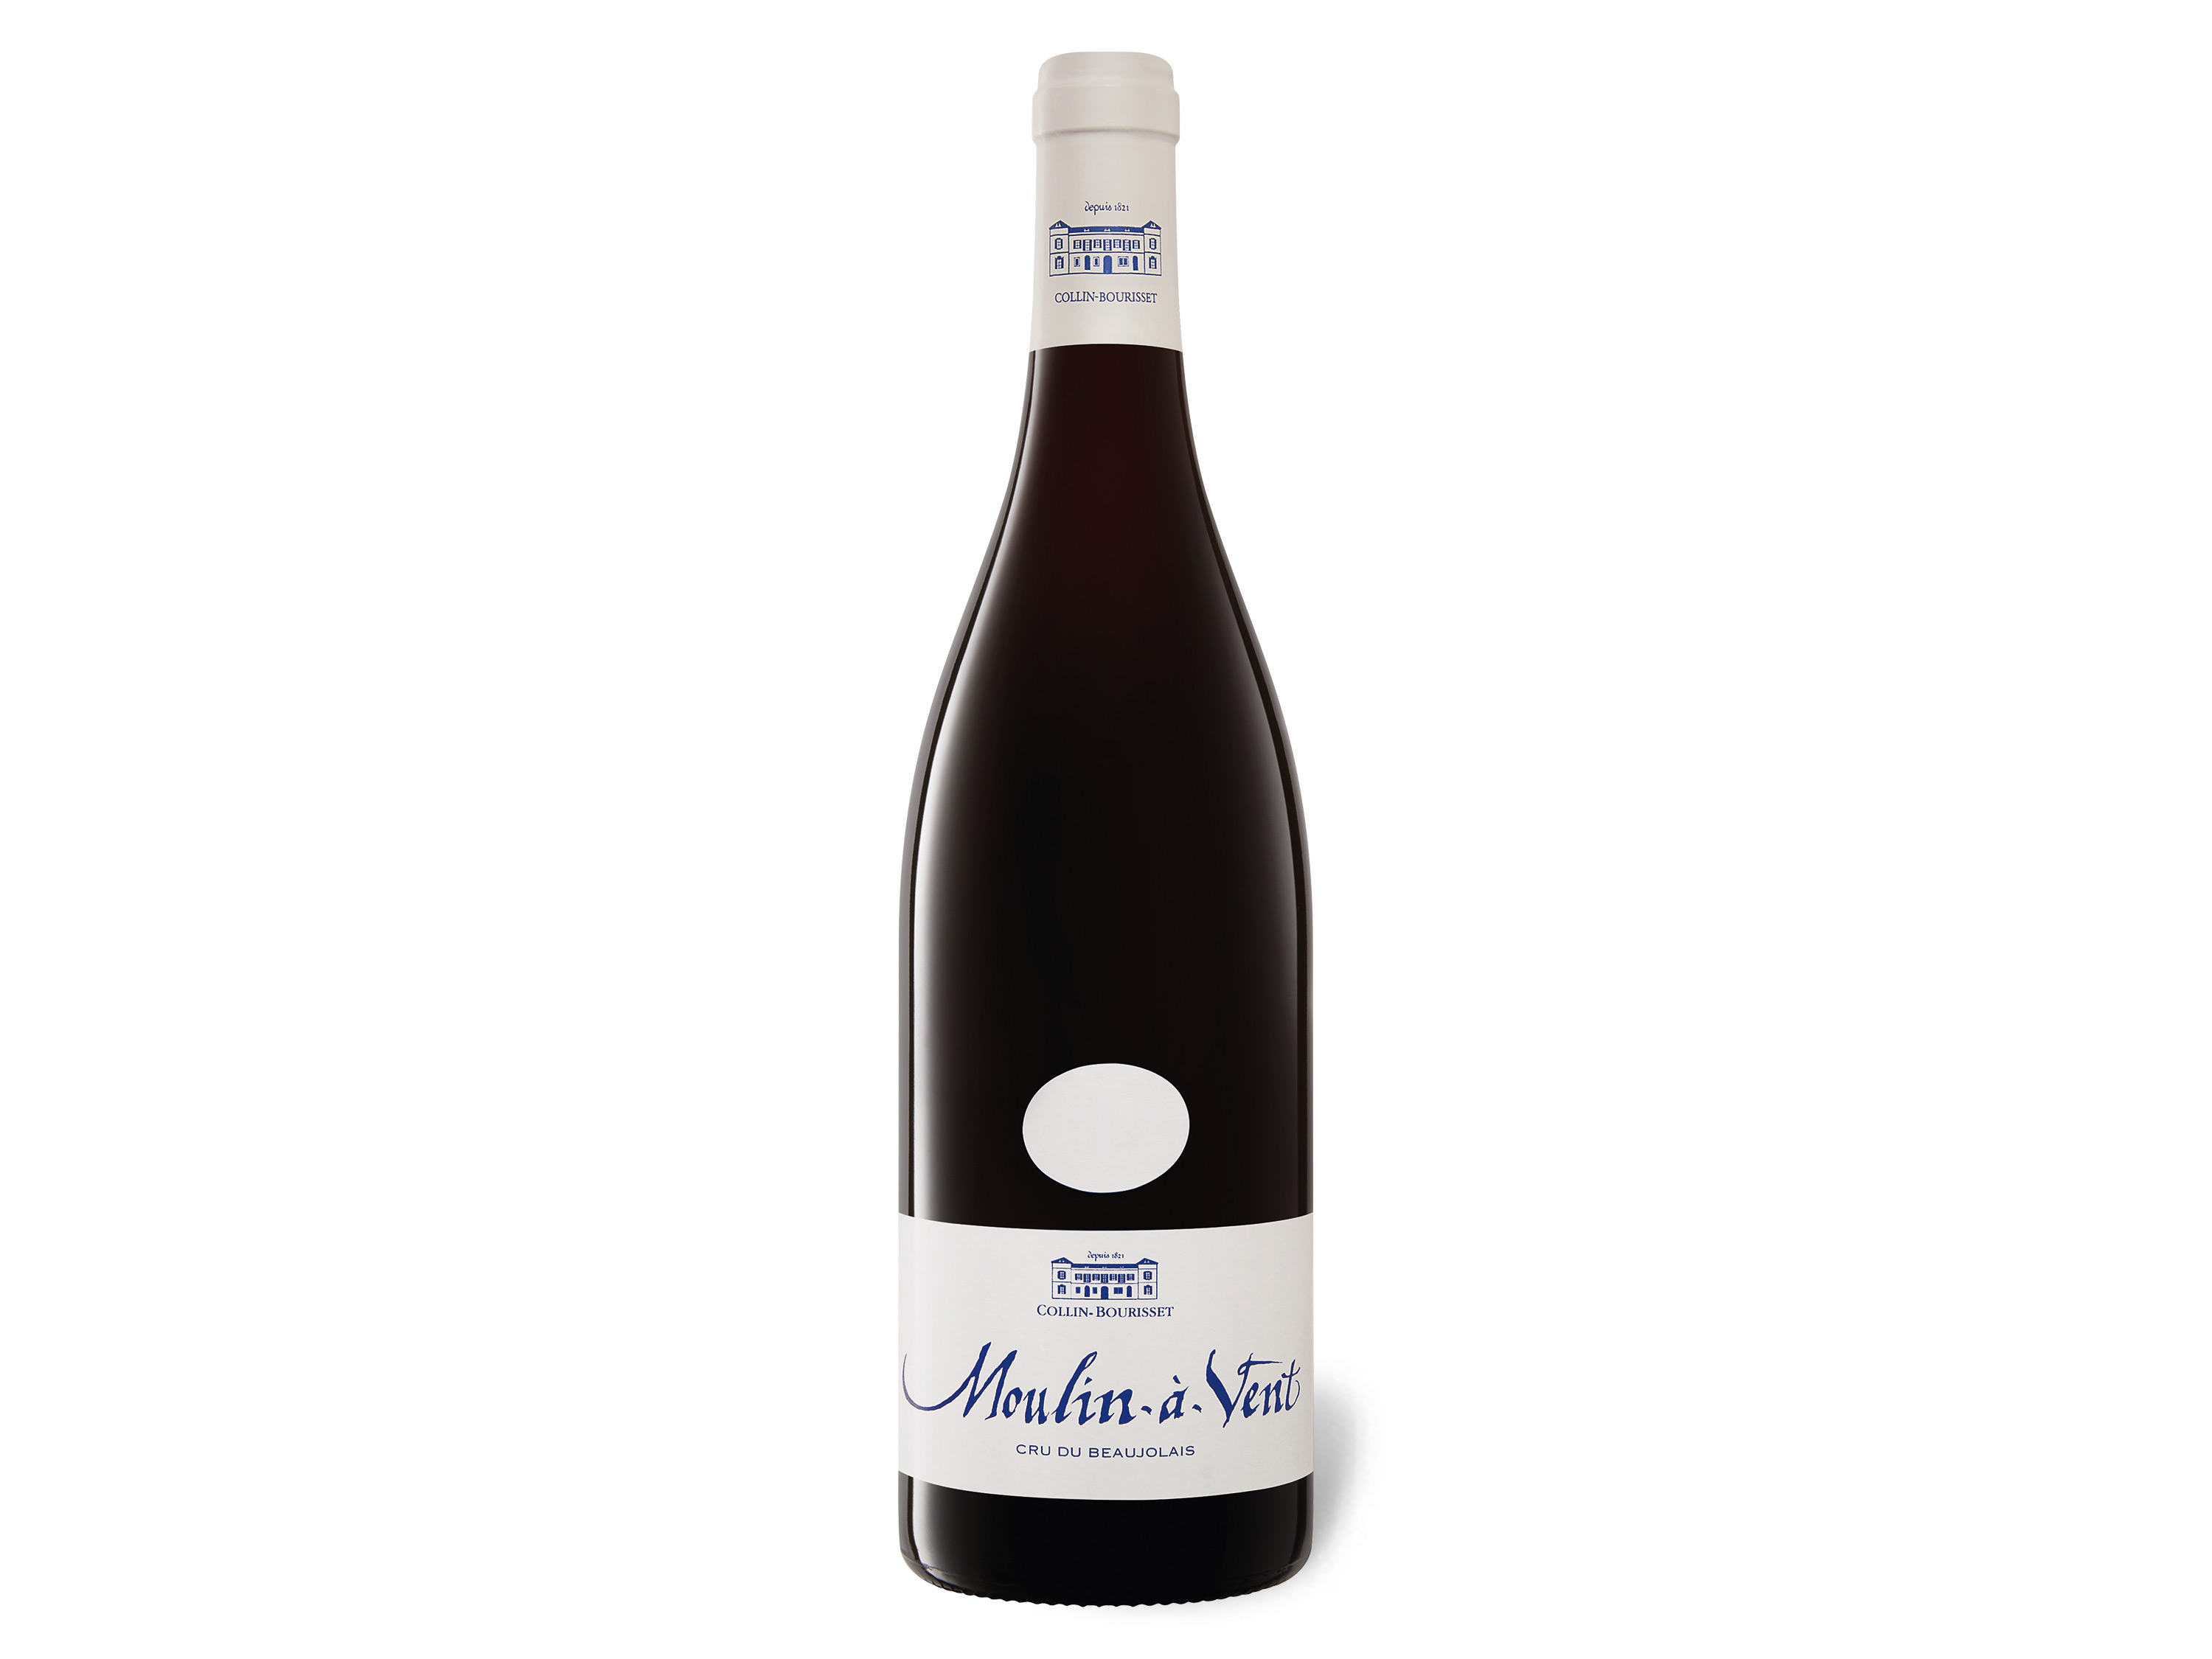 Collin Bourisset Moulin-à-Vent AOP trocken, Rotwein 2020 Wein & Spirituosen Lidl DE